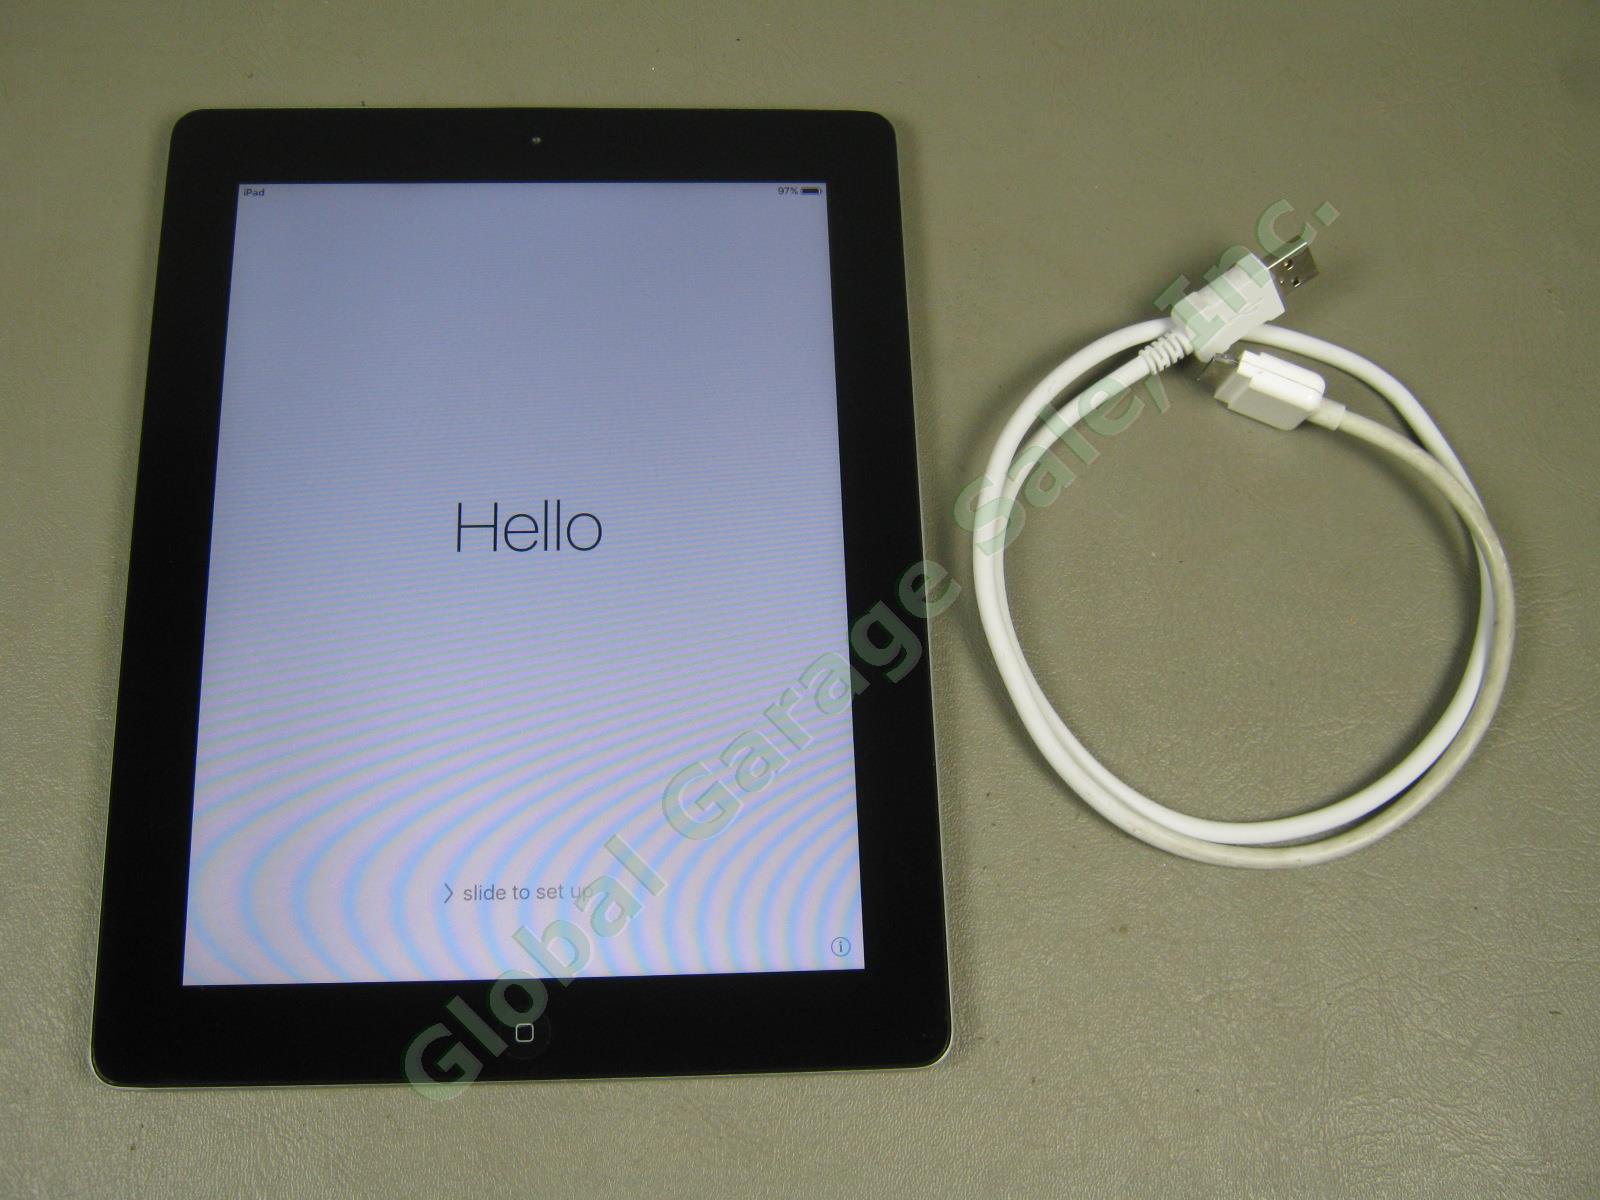 Apple iPad 2 Wifi 32GB Black Tablet Factory Reset MC770LL/A A1395 NO RESERVE!